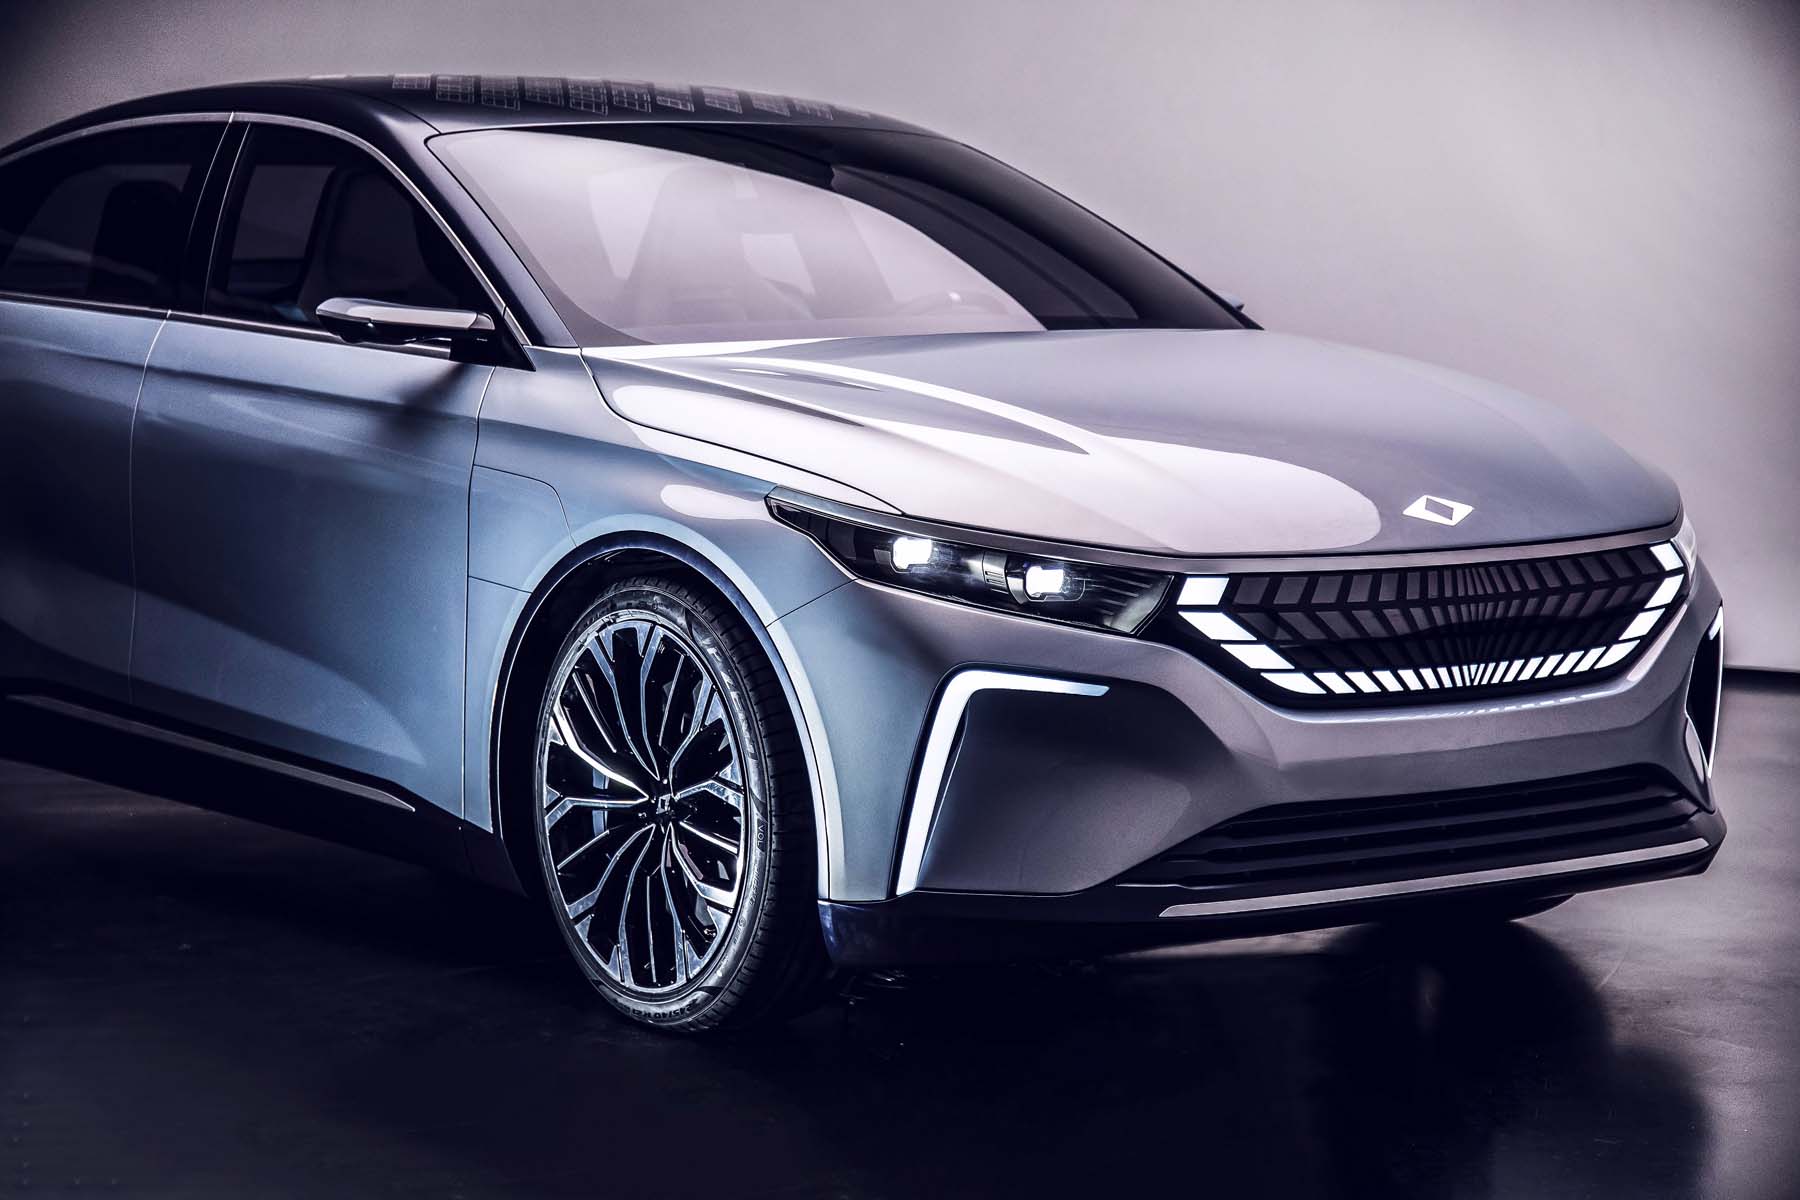 Yerli otomobil TOGG, dünya sahnesine çıktı, CES 2022'de sergilendi! Yeni sedan model görenleri mest etti 